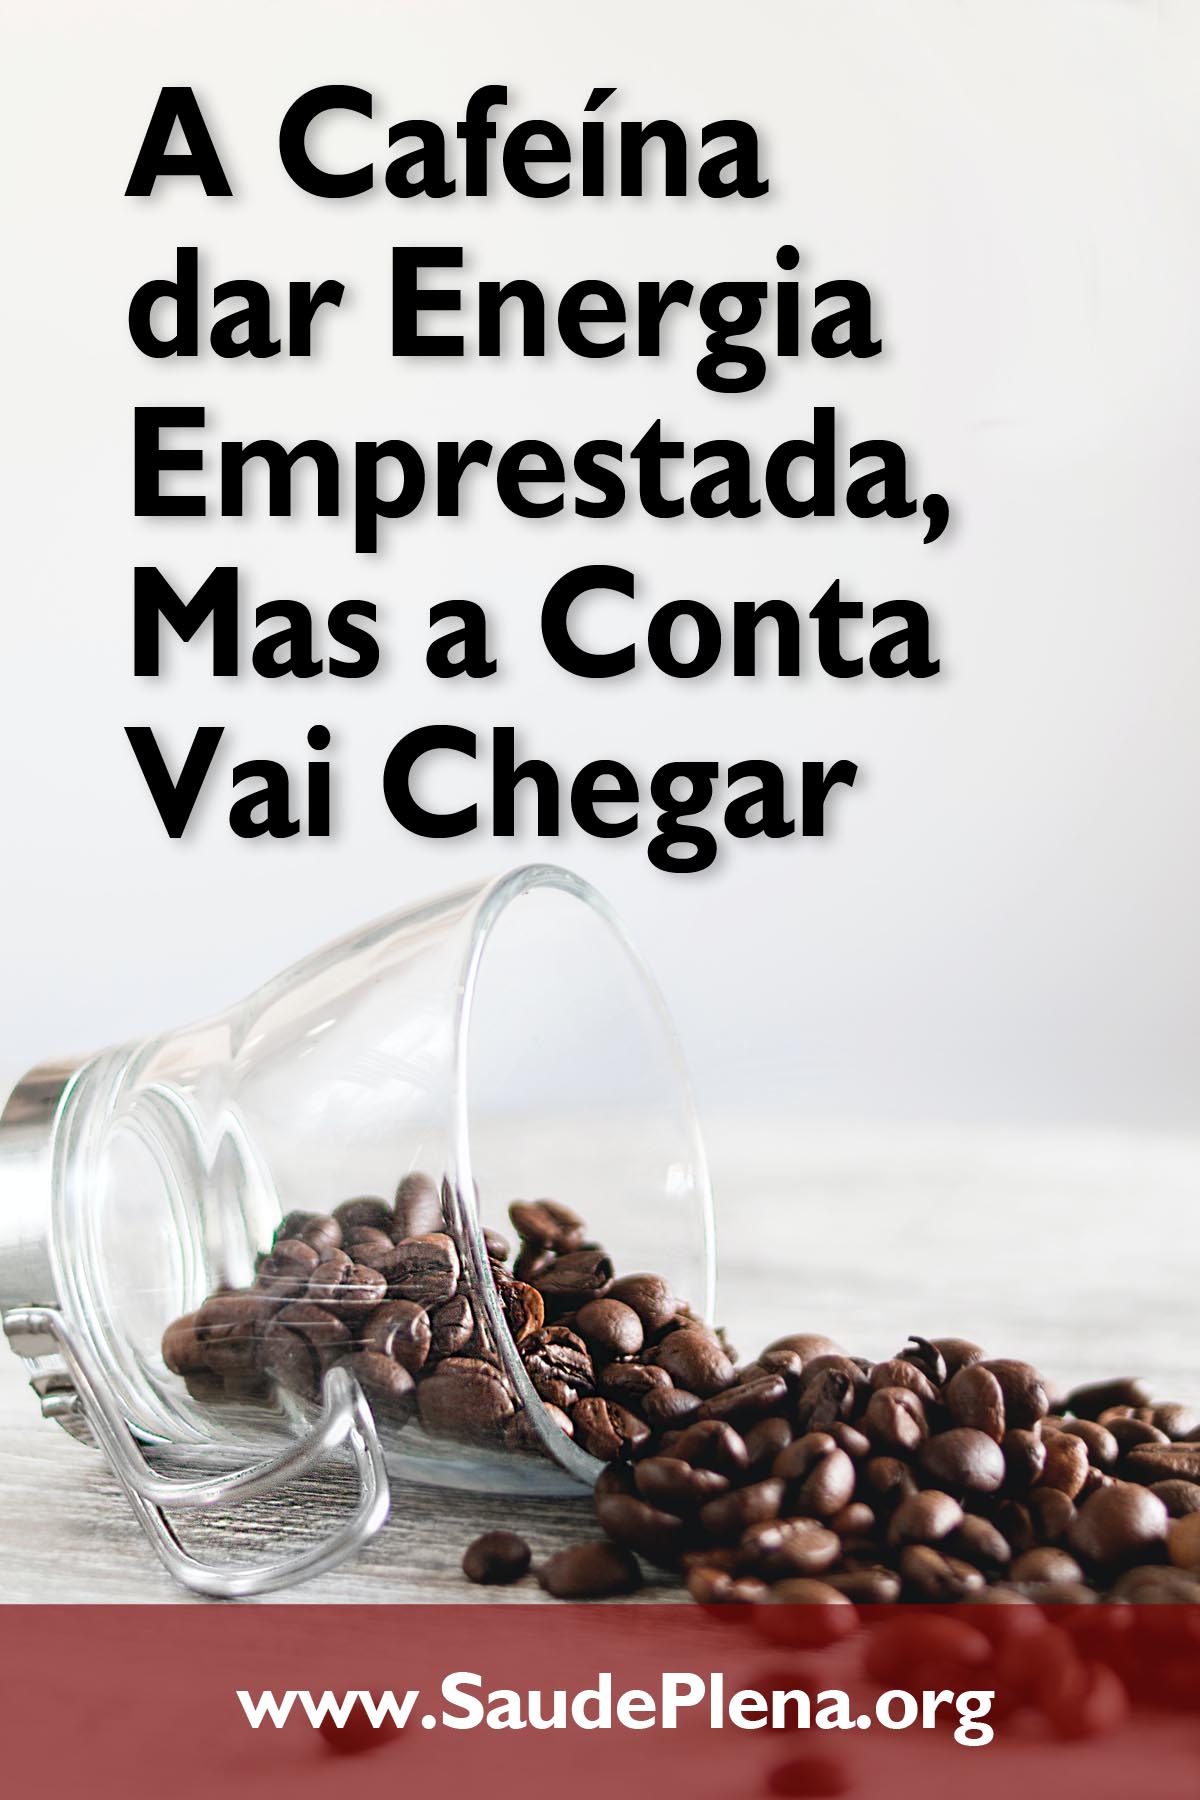 A Cafeína dar Energia Emprestada, Mas a Conta Vai Chegar